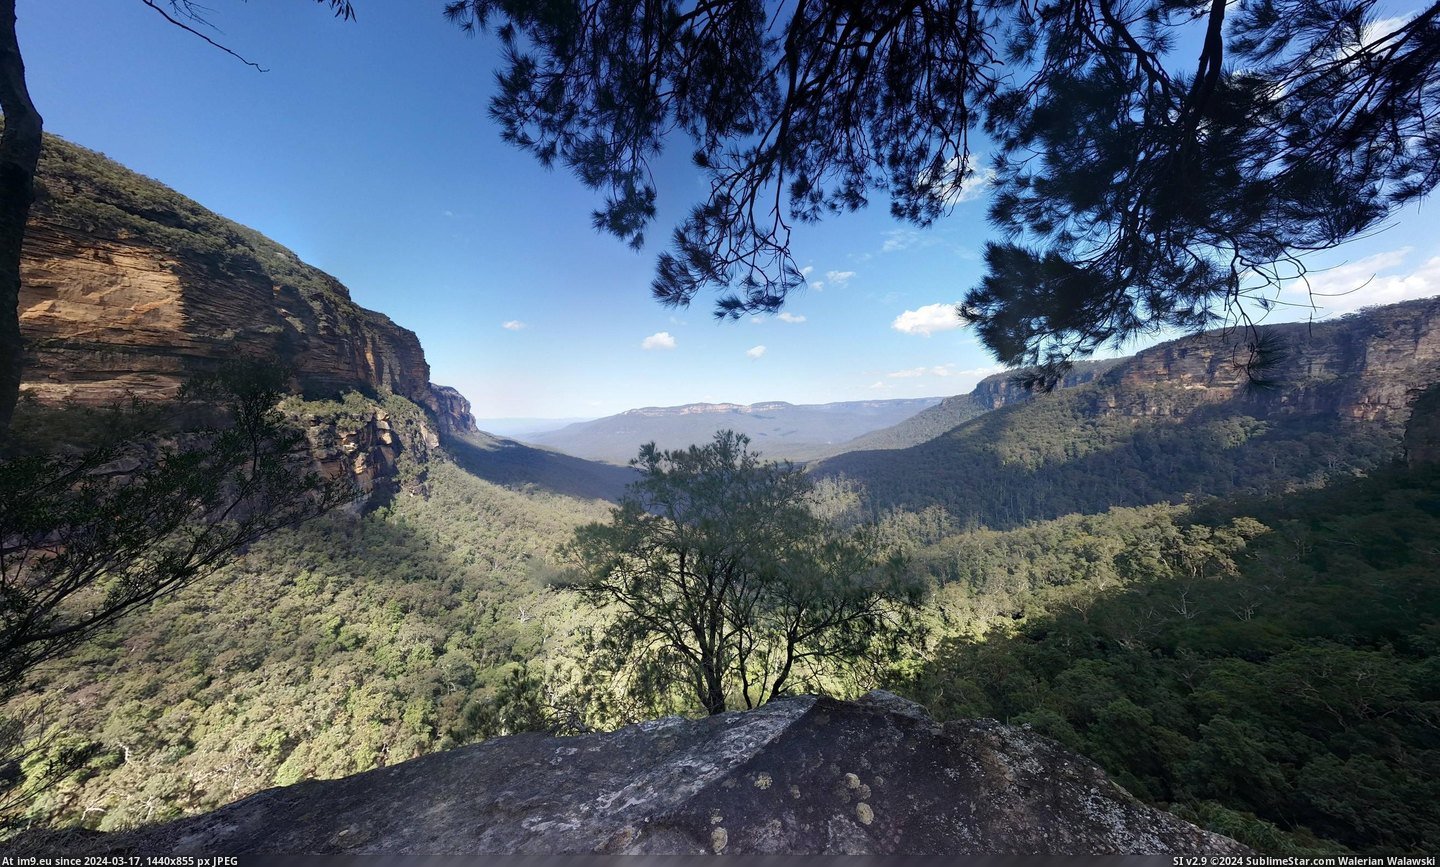 #Blue #Australia #Mountains [Earthporn] Blue Mountains, Australia  (2636x1577) Pic. (Bild von album My r/EARTHPORN favs))